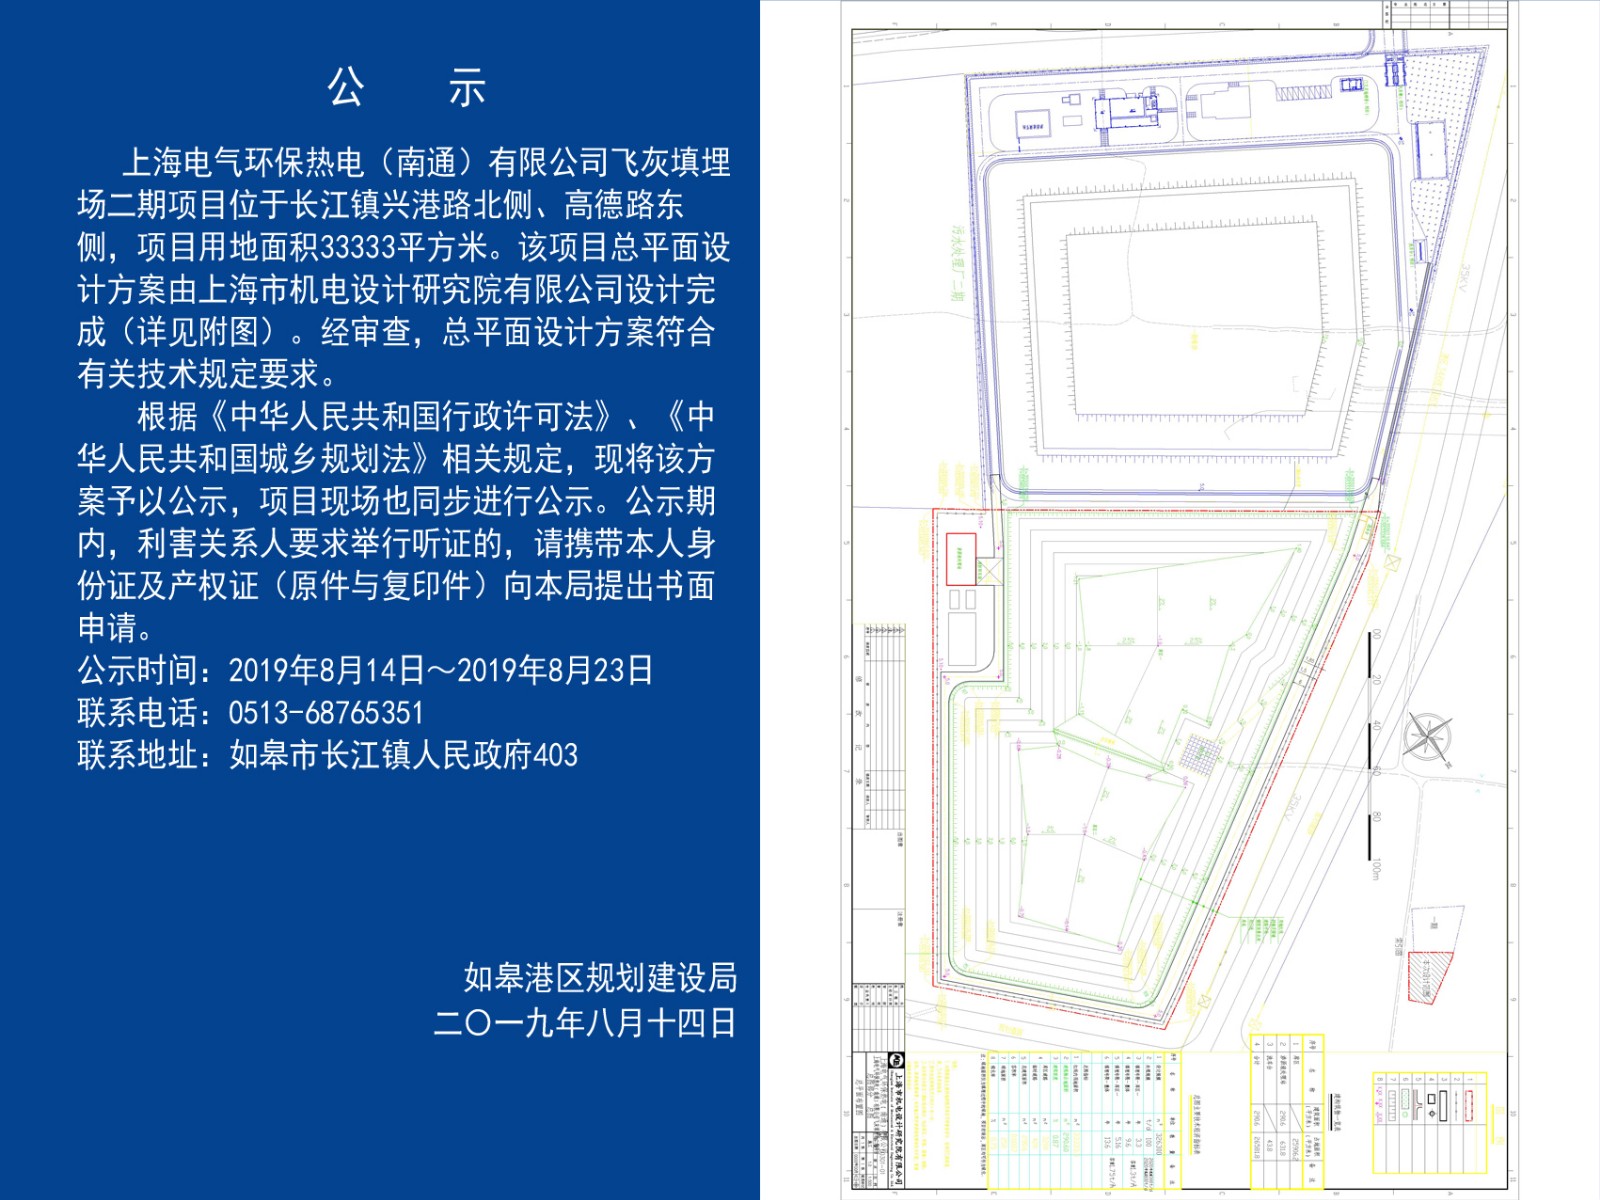 上海电气环保热电（南通）有限公司飞灰填埋场二期总平面公示.jpg